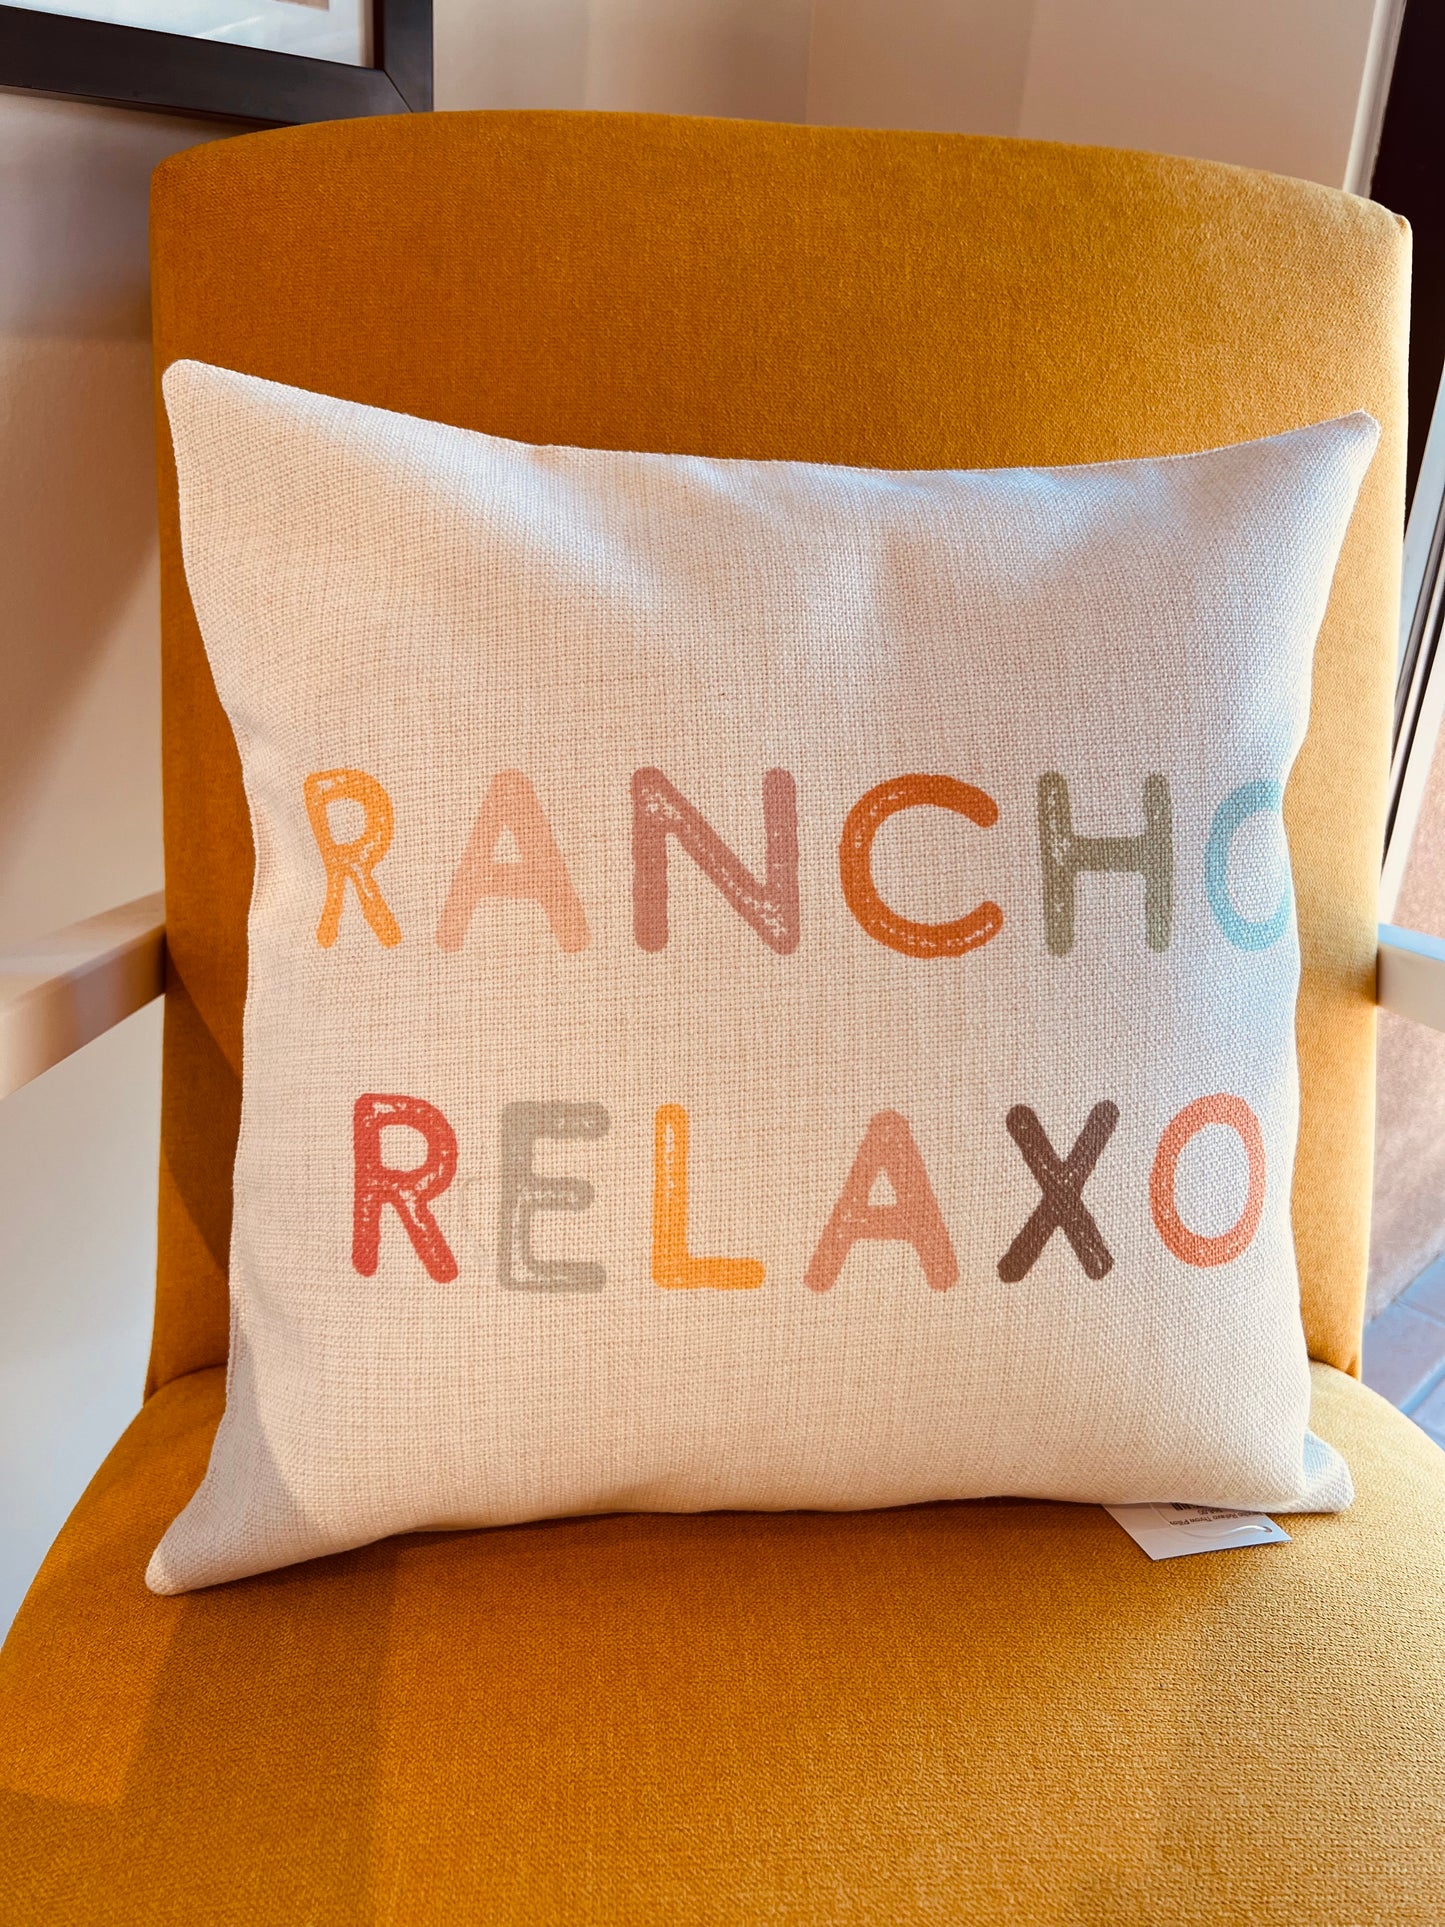 Throw Pillow - Rancho Relaxo